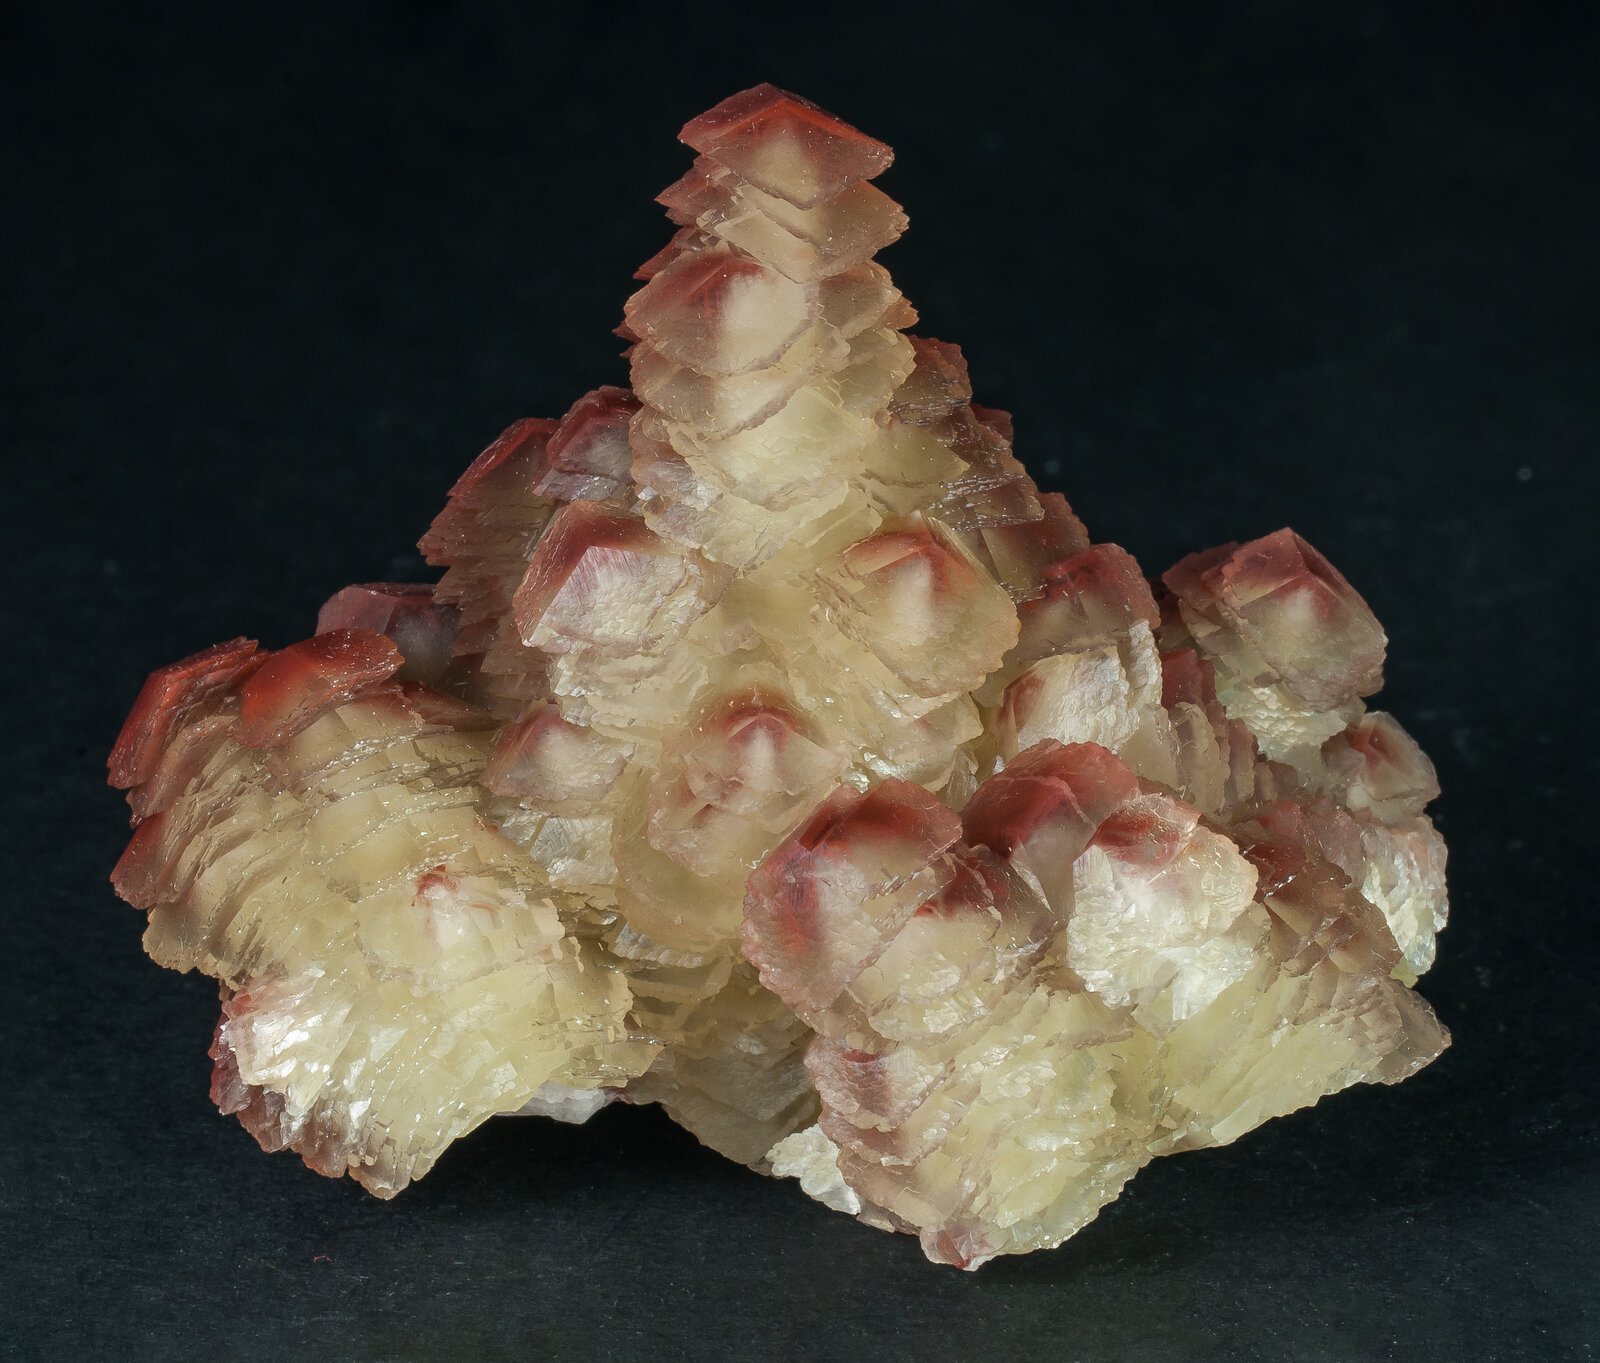 specimens/s_imagesAP6/Calcite-TMR47AP6f2.jpg